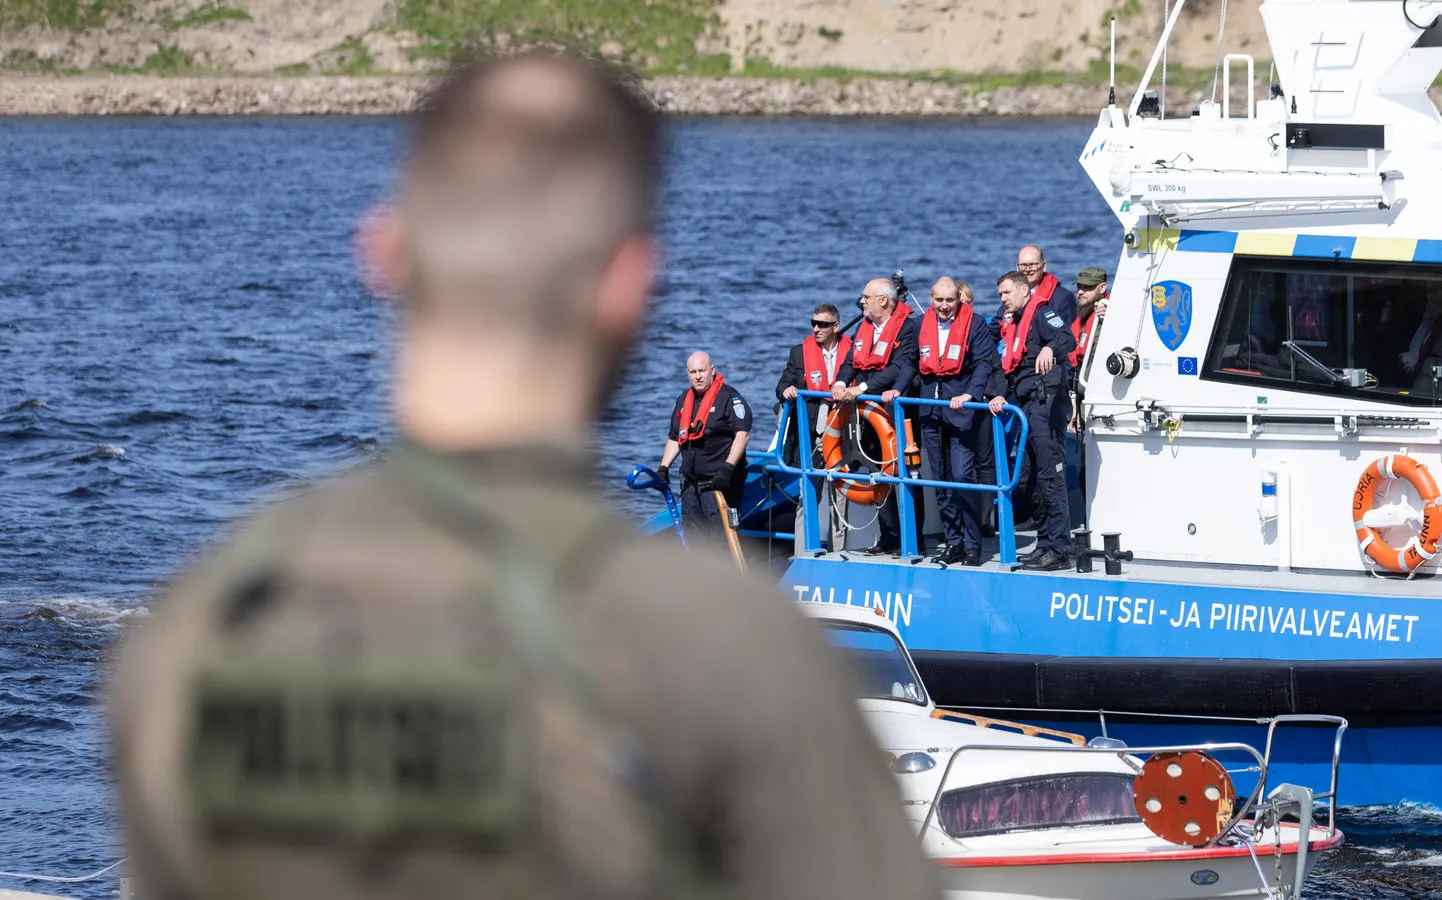 Сотрудник PPA наблюдает за катером с президентами Эстонии и Исландии на борту, которые посетили Нарву за неделю до провокационных действия сотрудников пограничного управления ФСБ.